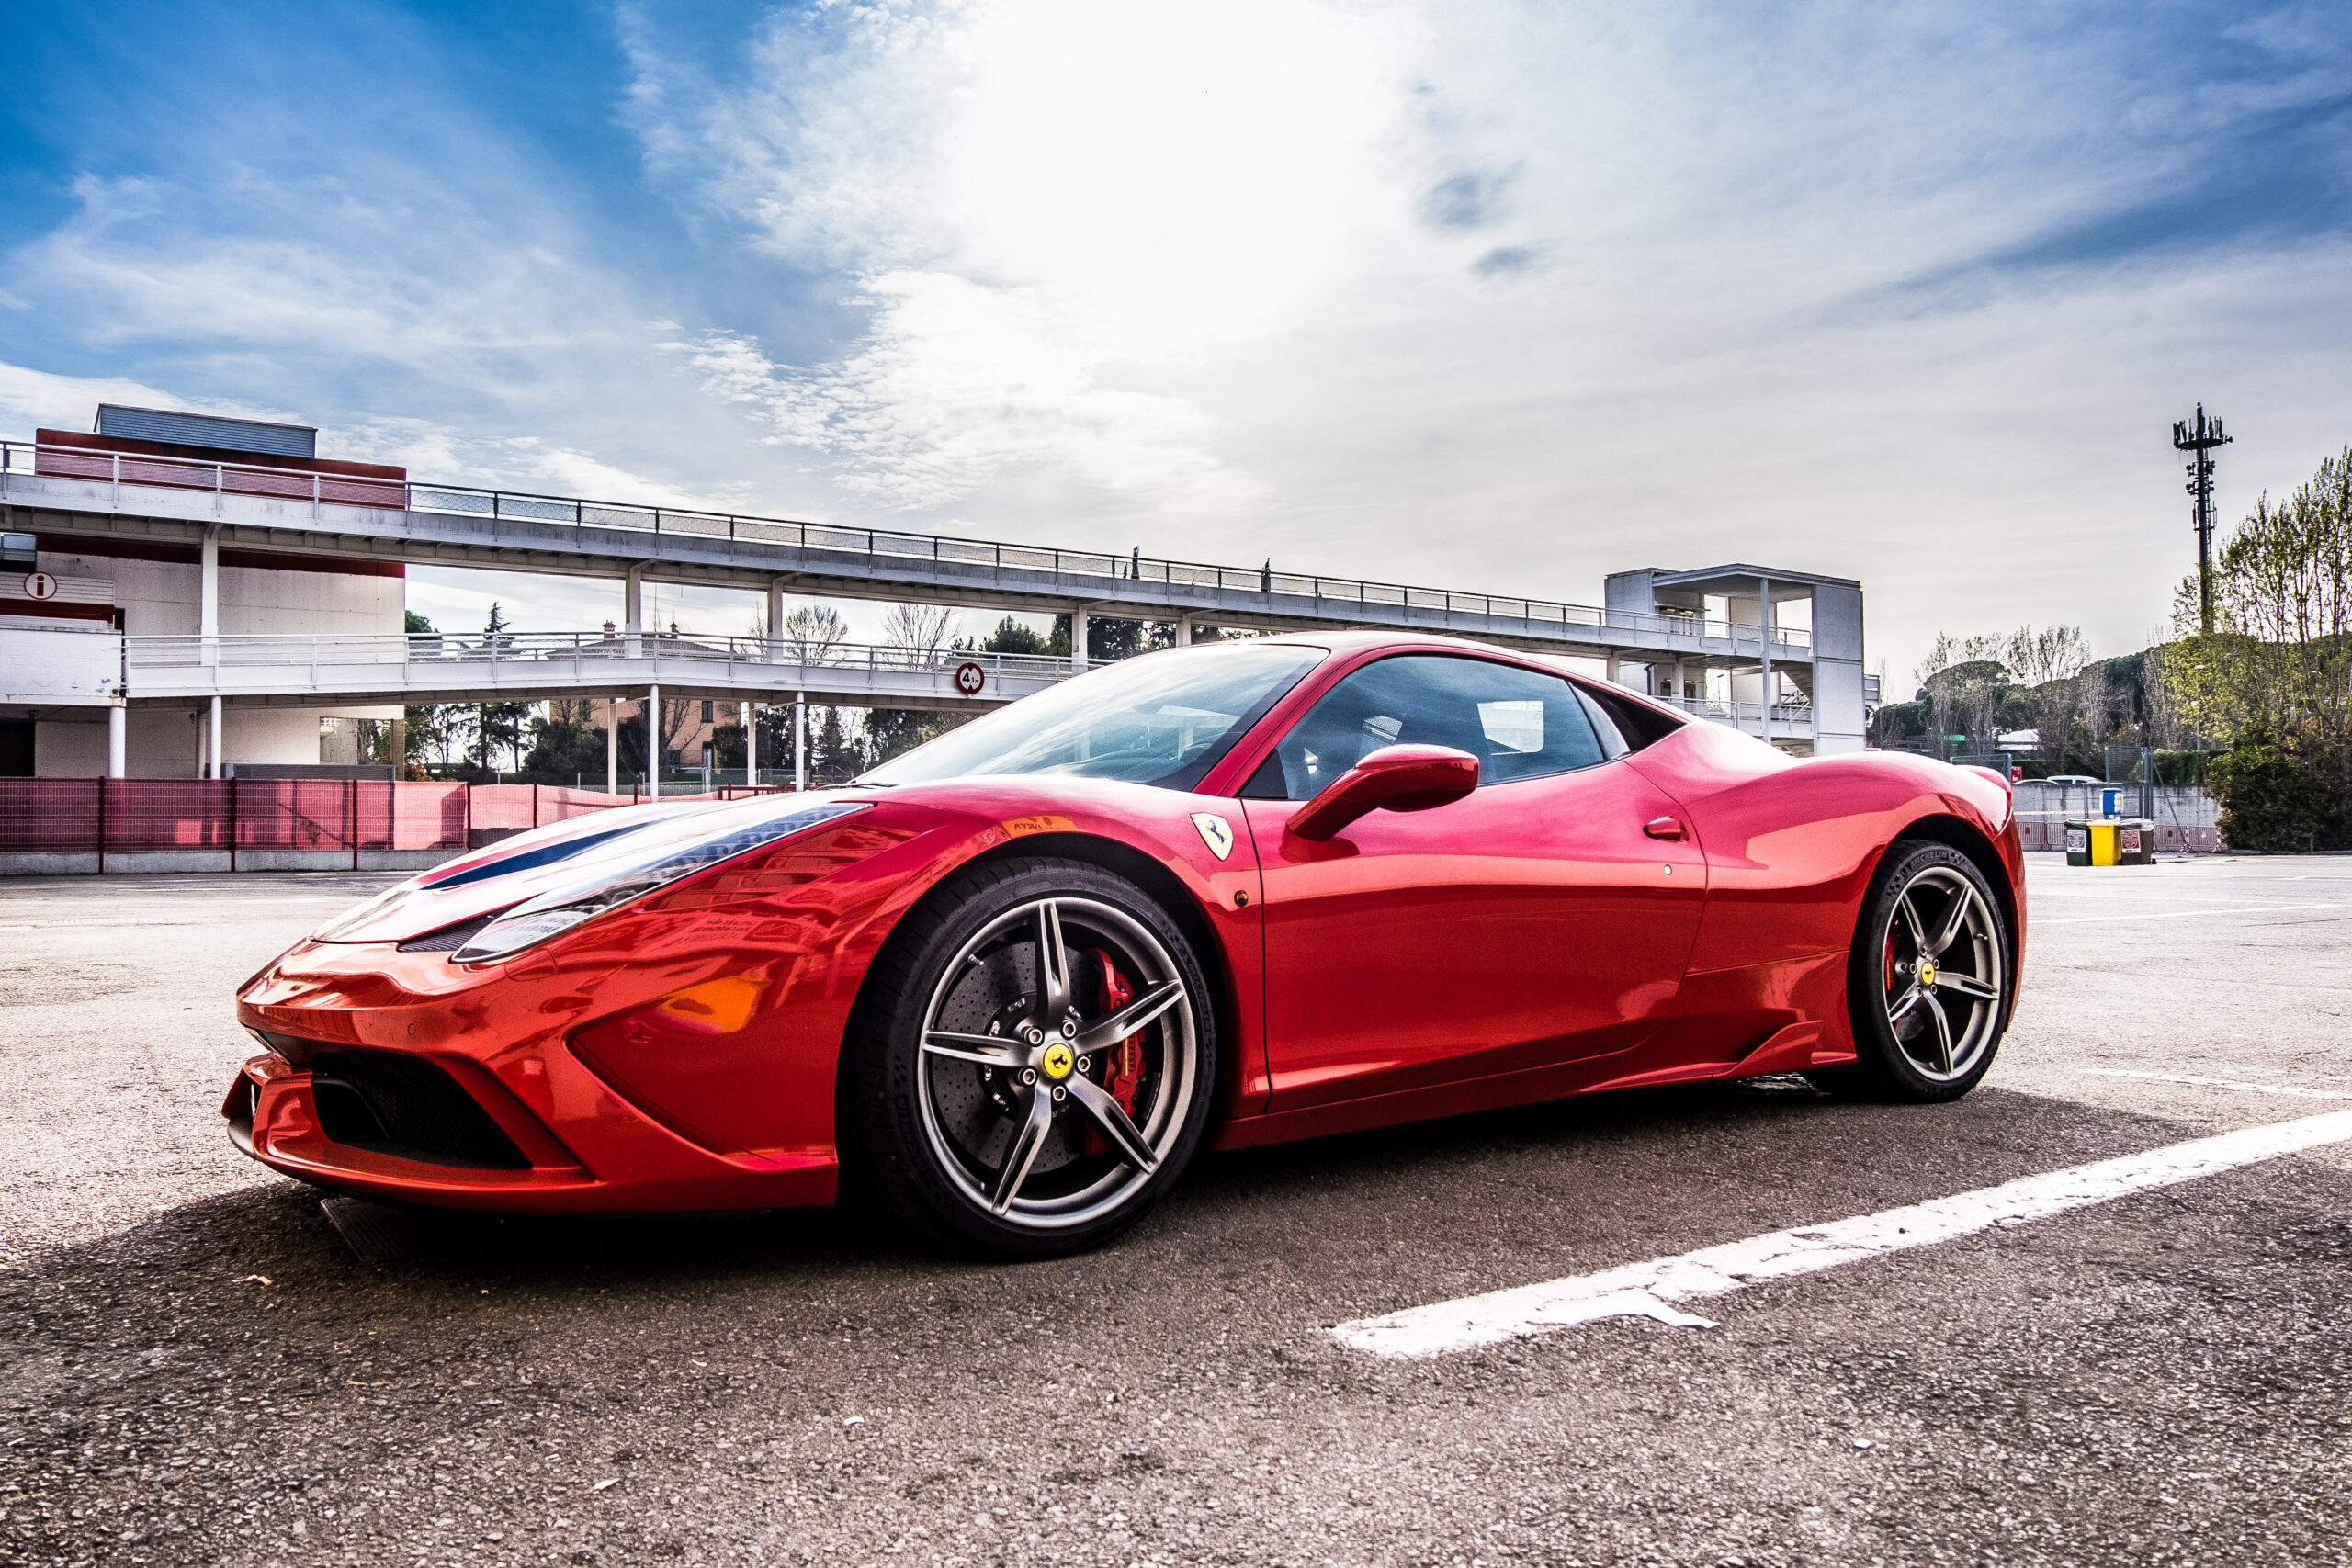 Sonha com uma Ferrari na garagem? Receita Federal leiloa supercarro em fevereiro